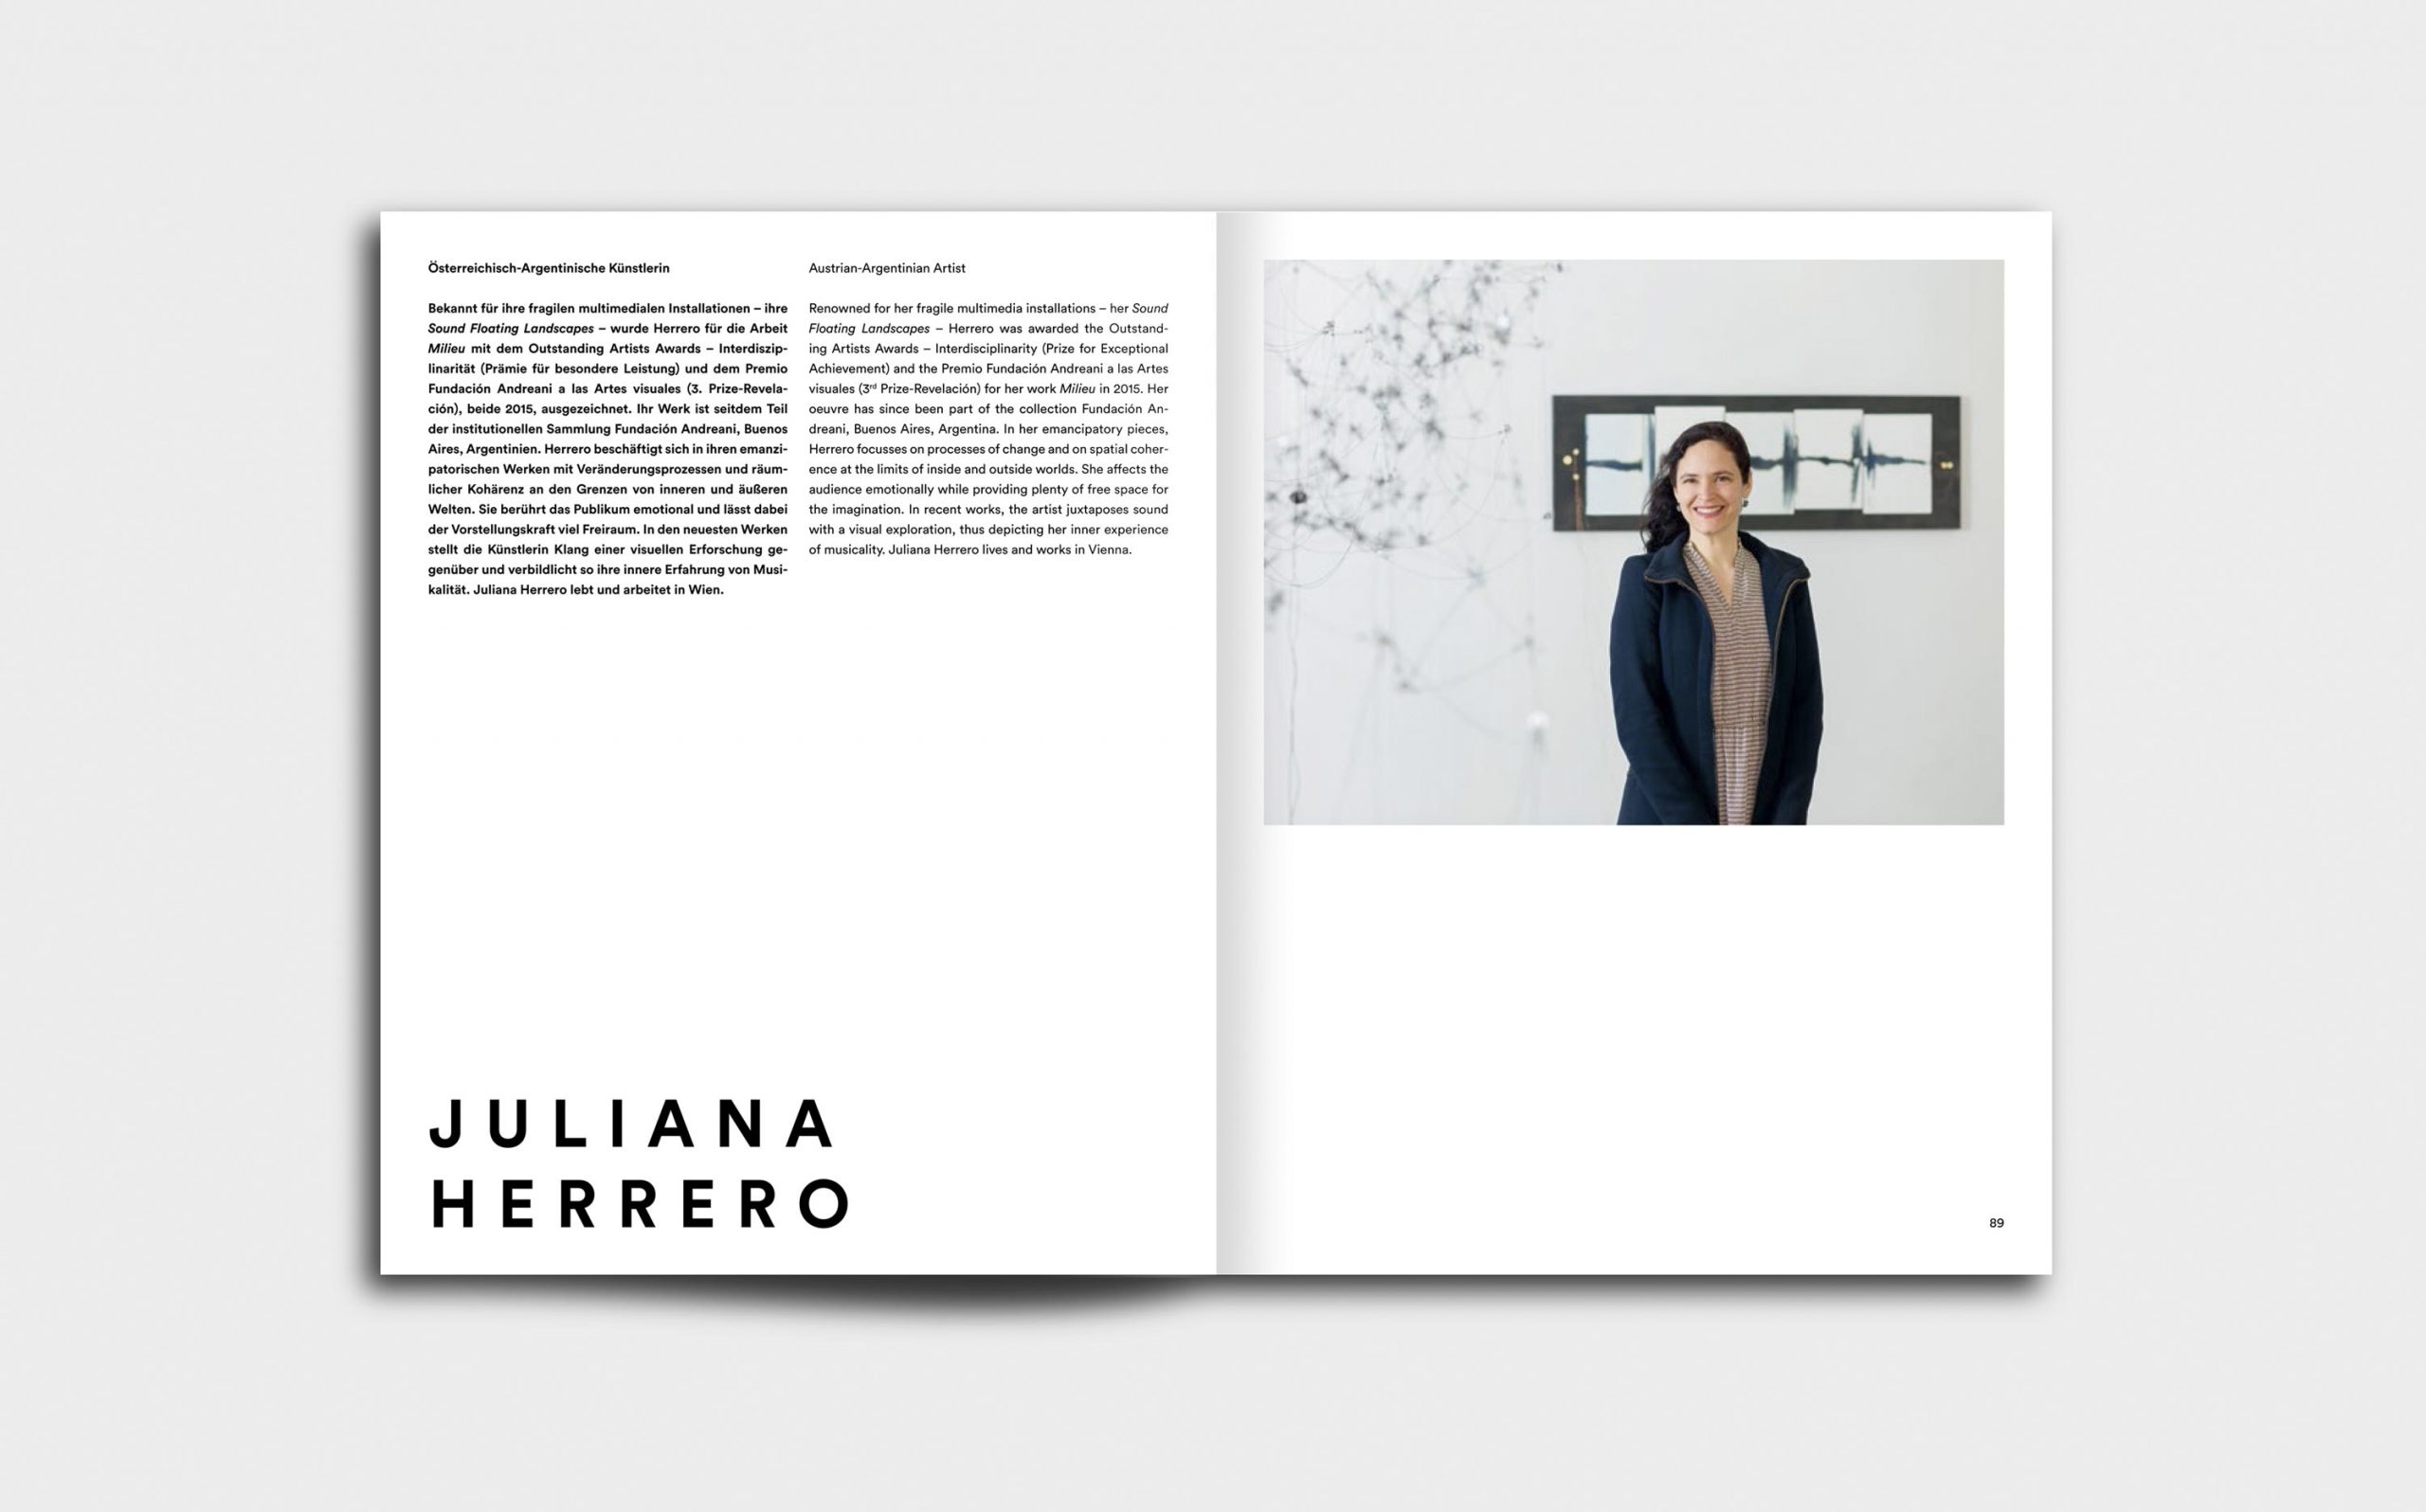 Juliana Herrero – REM 1:1 | Künstlerportrait und CV | Keywords: Editorial Design, Artist Book, Künstlerbuch, Buchgestaltung, Grafikdesign, Design, Typografie